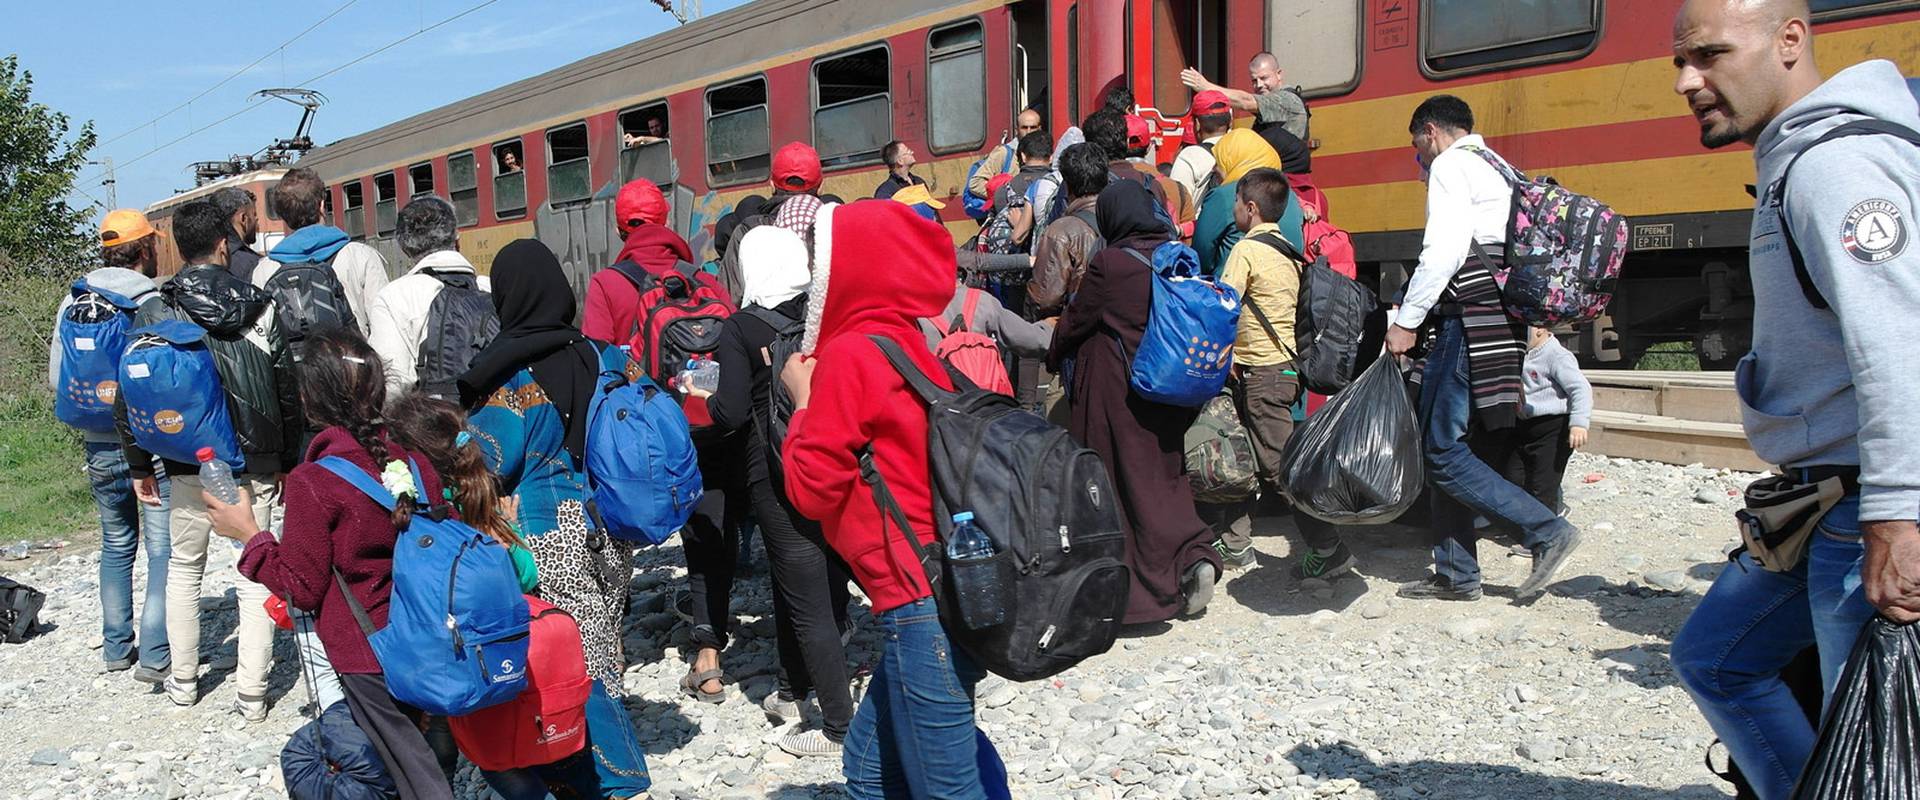 Η Ουγγαρία τάχθηκε υπέρ της τουρκικής εισβολής: «Θετικό το ότι σπρώχνουν το μεταναστευτικό πρόβλημα προς τη Συρία»